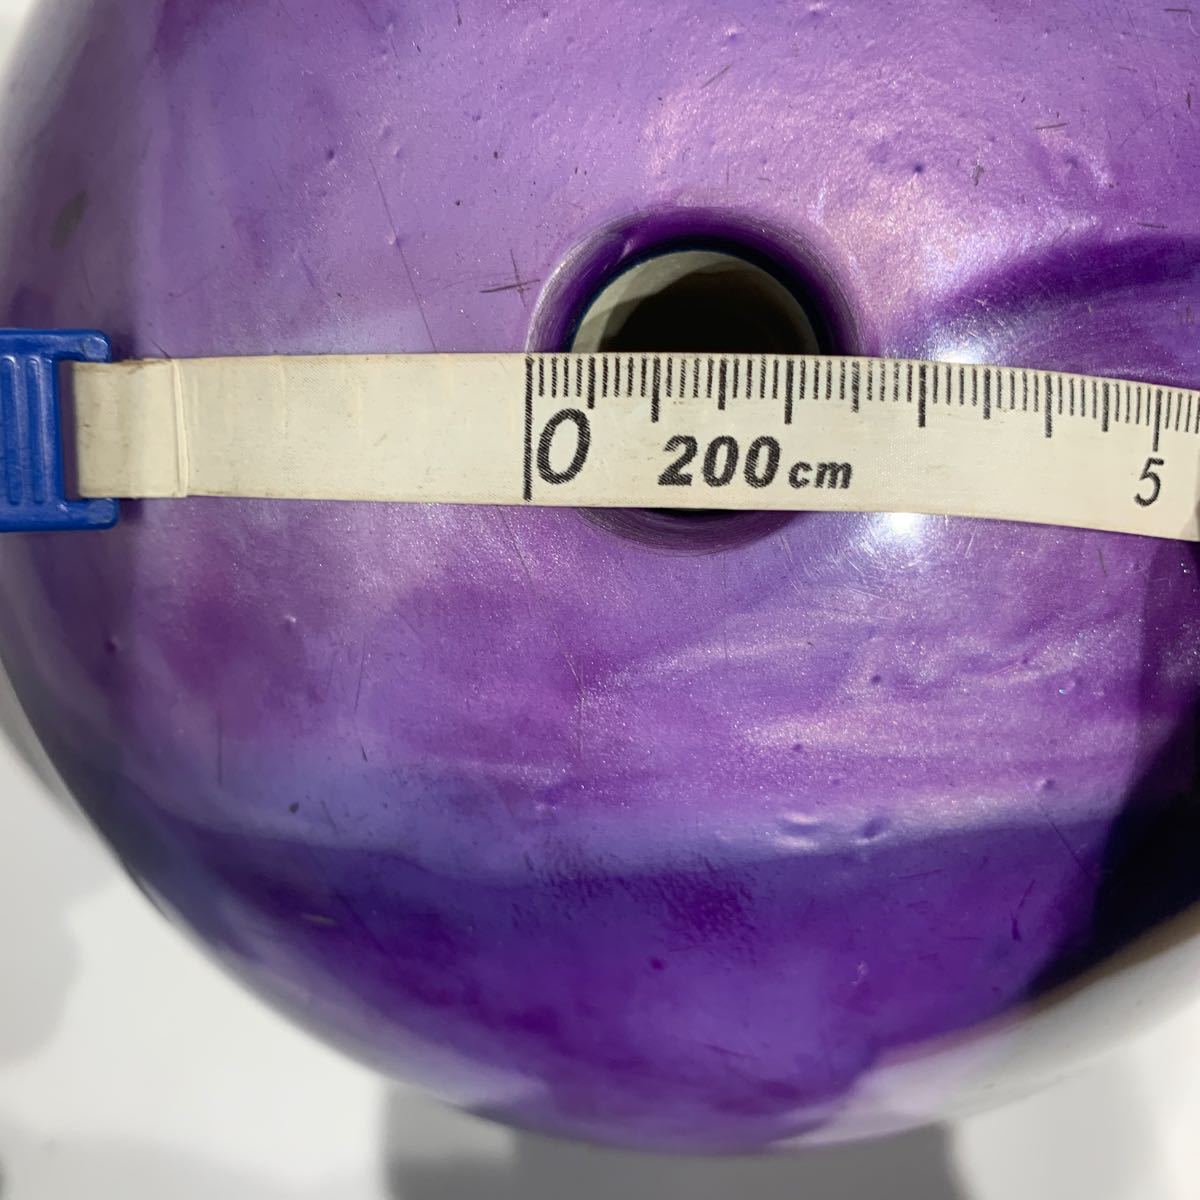 ボーリング　ボール　玉　ラウンドワン　ROUND1 紫　パープル　重さ約4.5kg レジャー　スポーツ　練習用　子供用？　ソフトケース付き_画像5